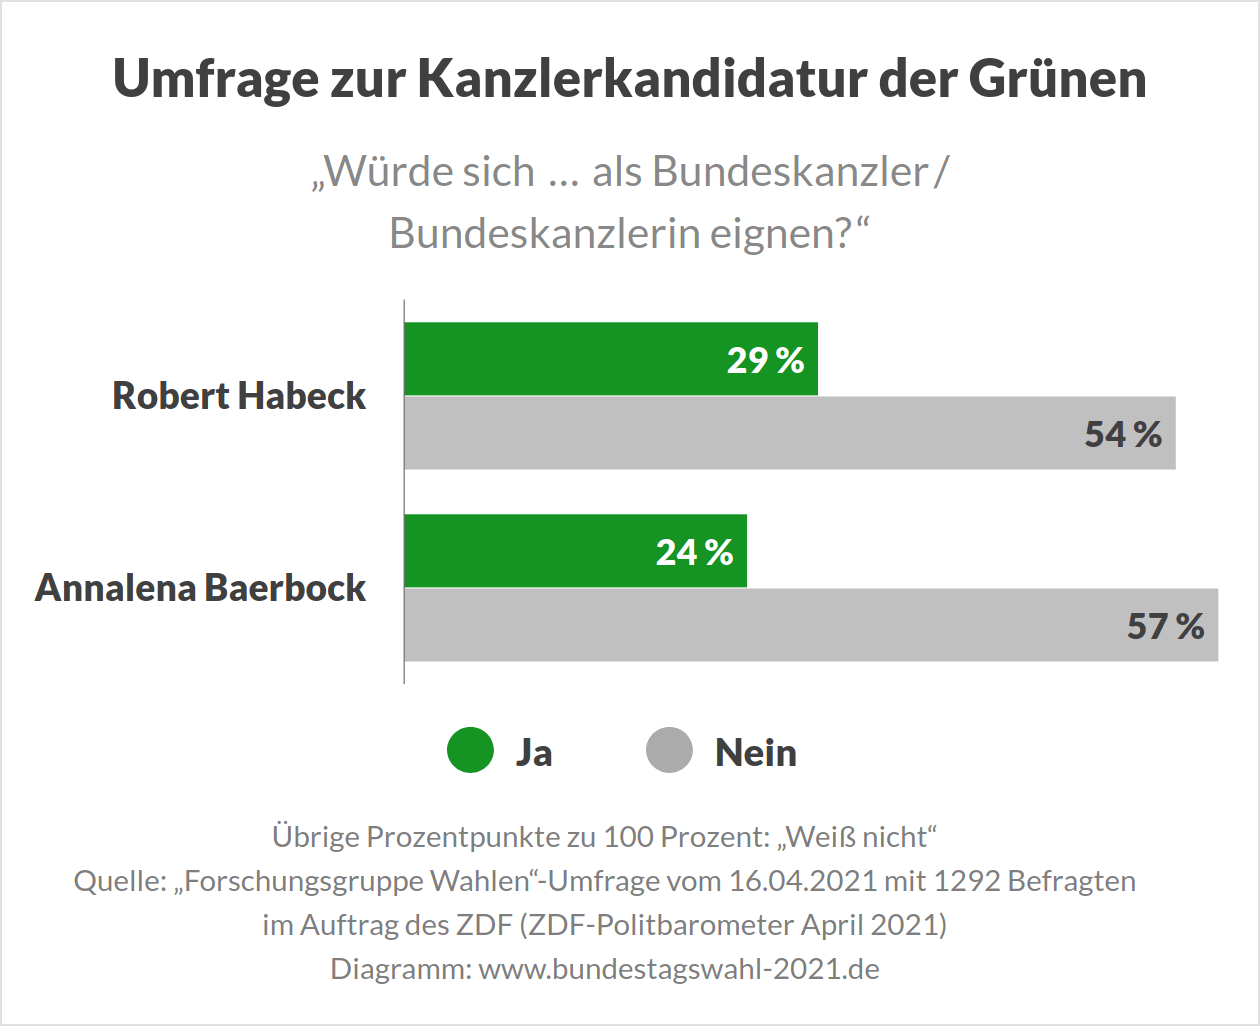 Umfrage zur Kanzlerkandidatur der Grünen bei der Bundestagswahl 2021 (Habeck vs Baerbock)